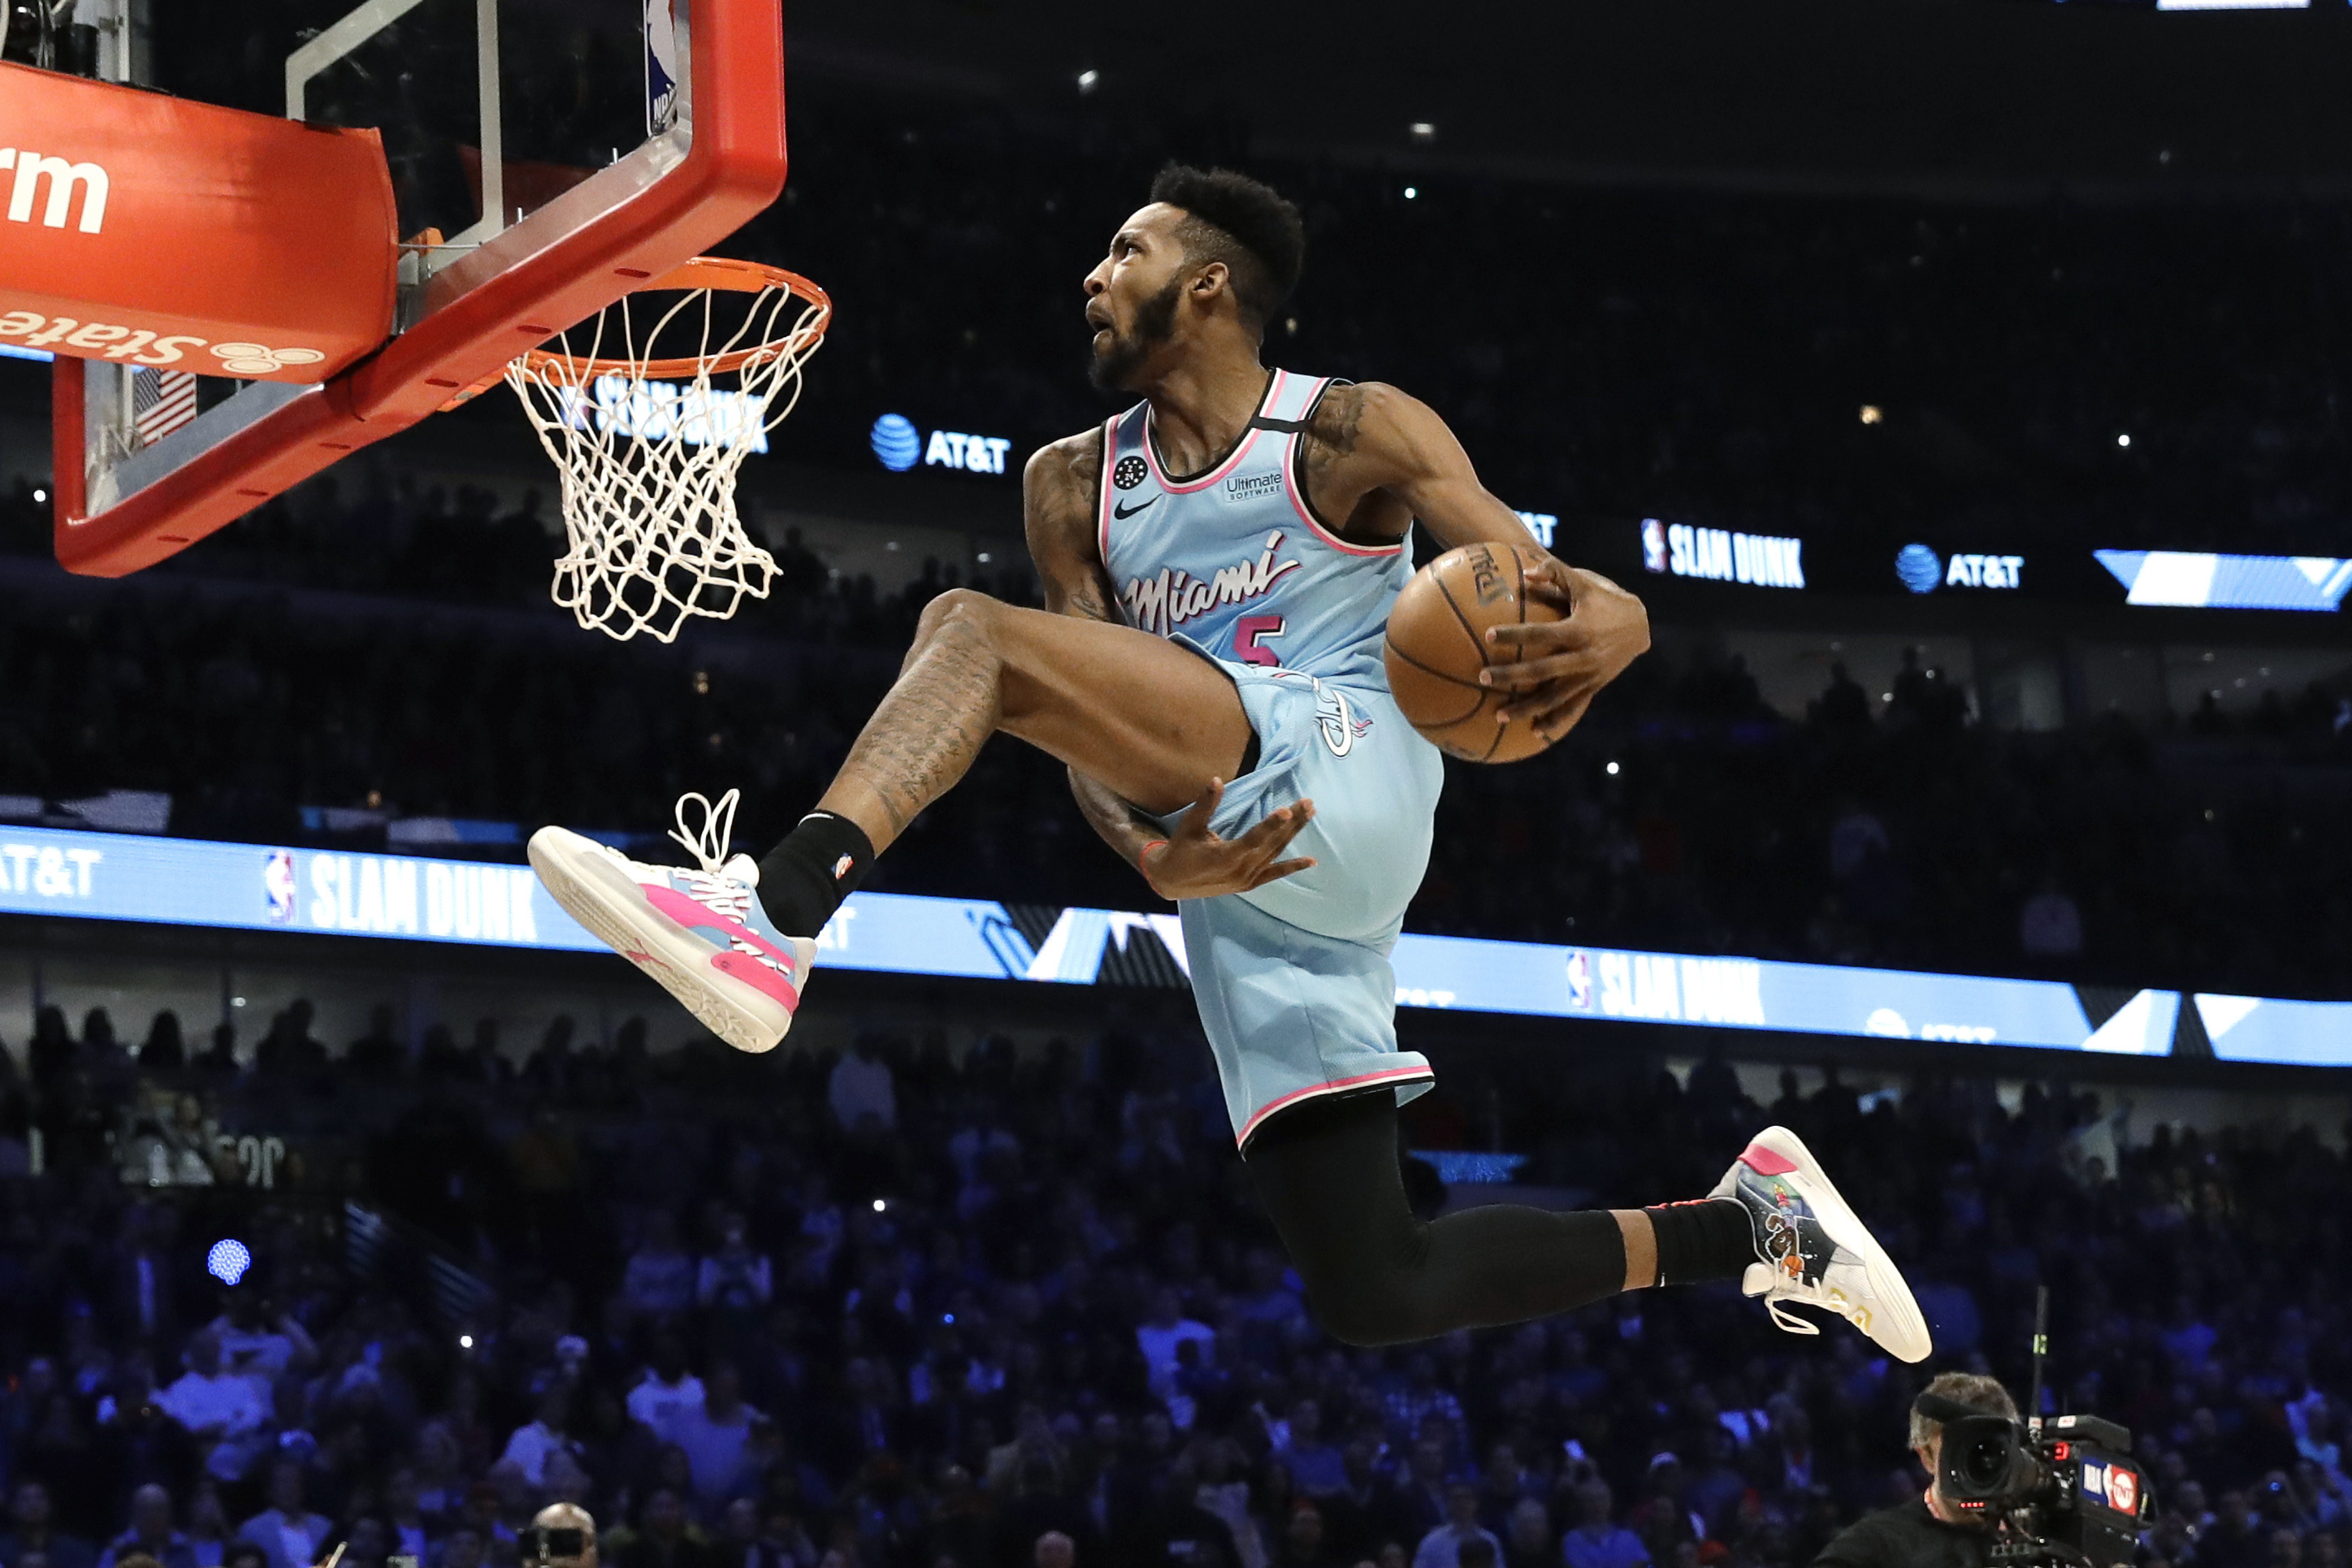 emne med undtagelse af Håbefuld NBA Slam Dunk Contest 2020: Highlights, Reaction from Derrick Jones Jr.'s  Win | News, Scores, Highlights, Stats, and Rumors | Bleacher Report